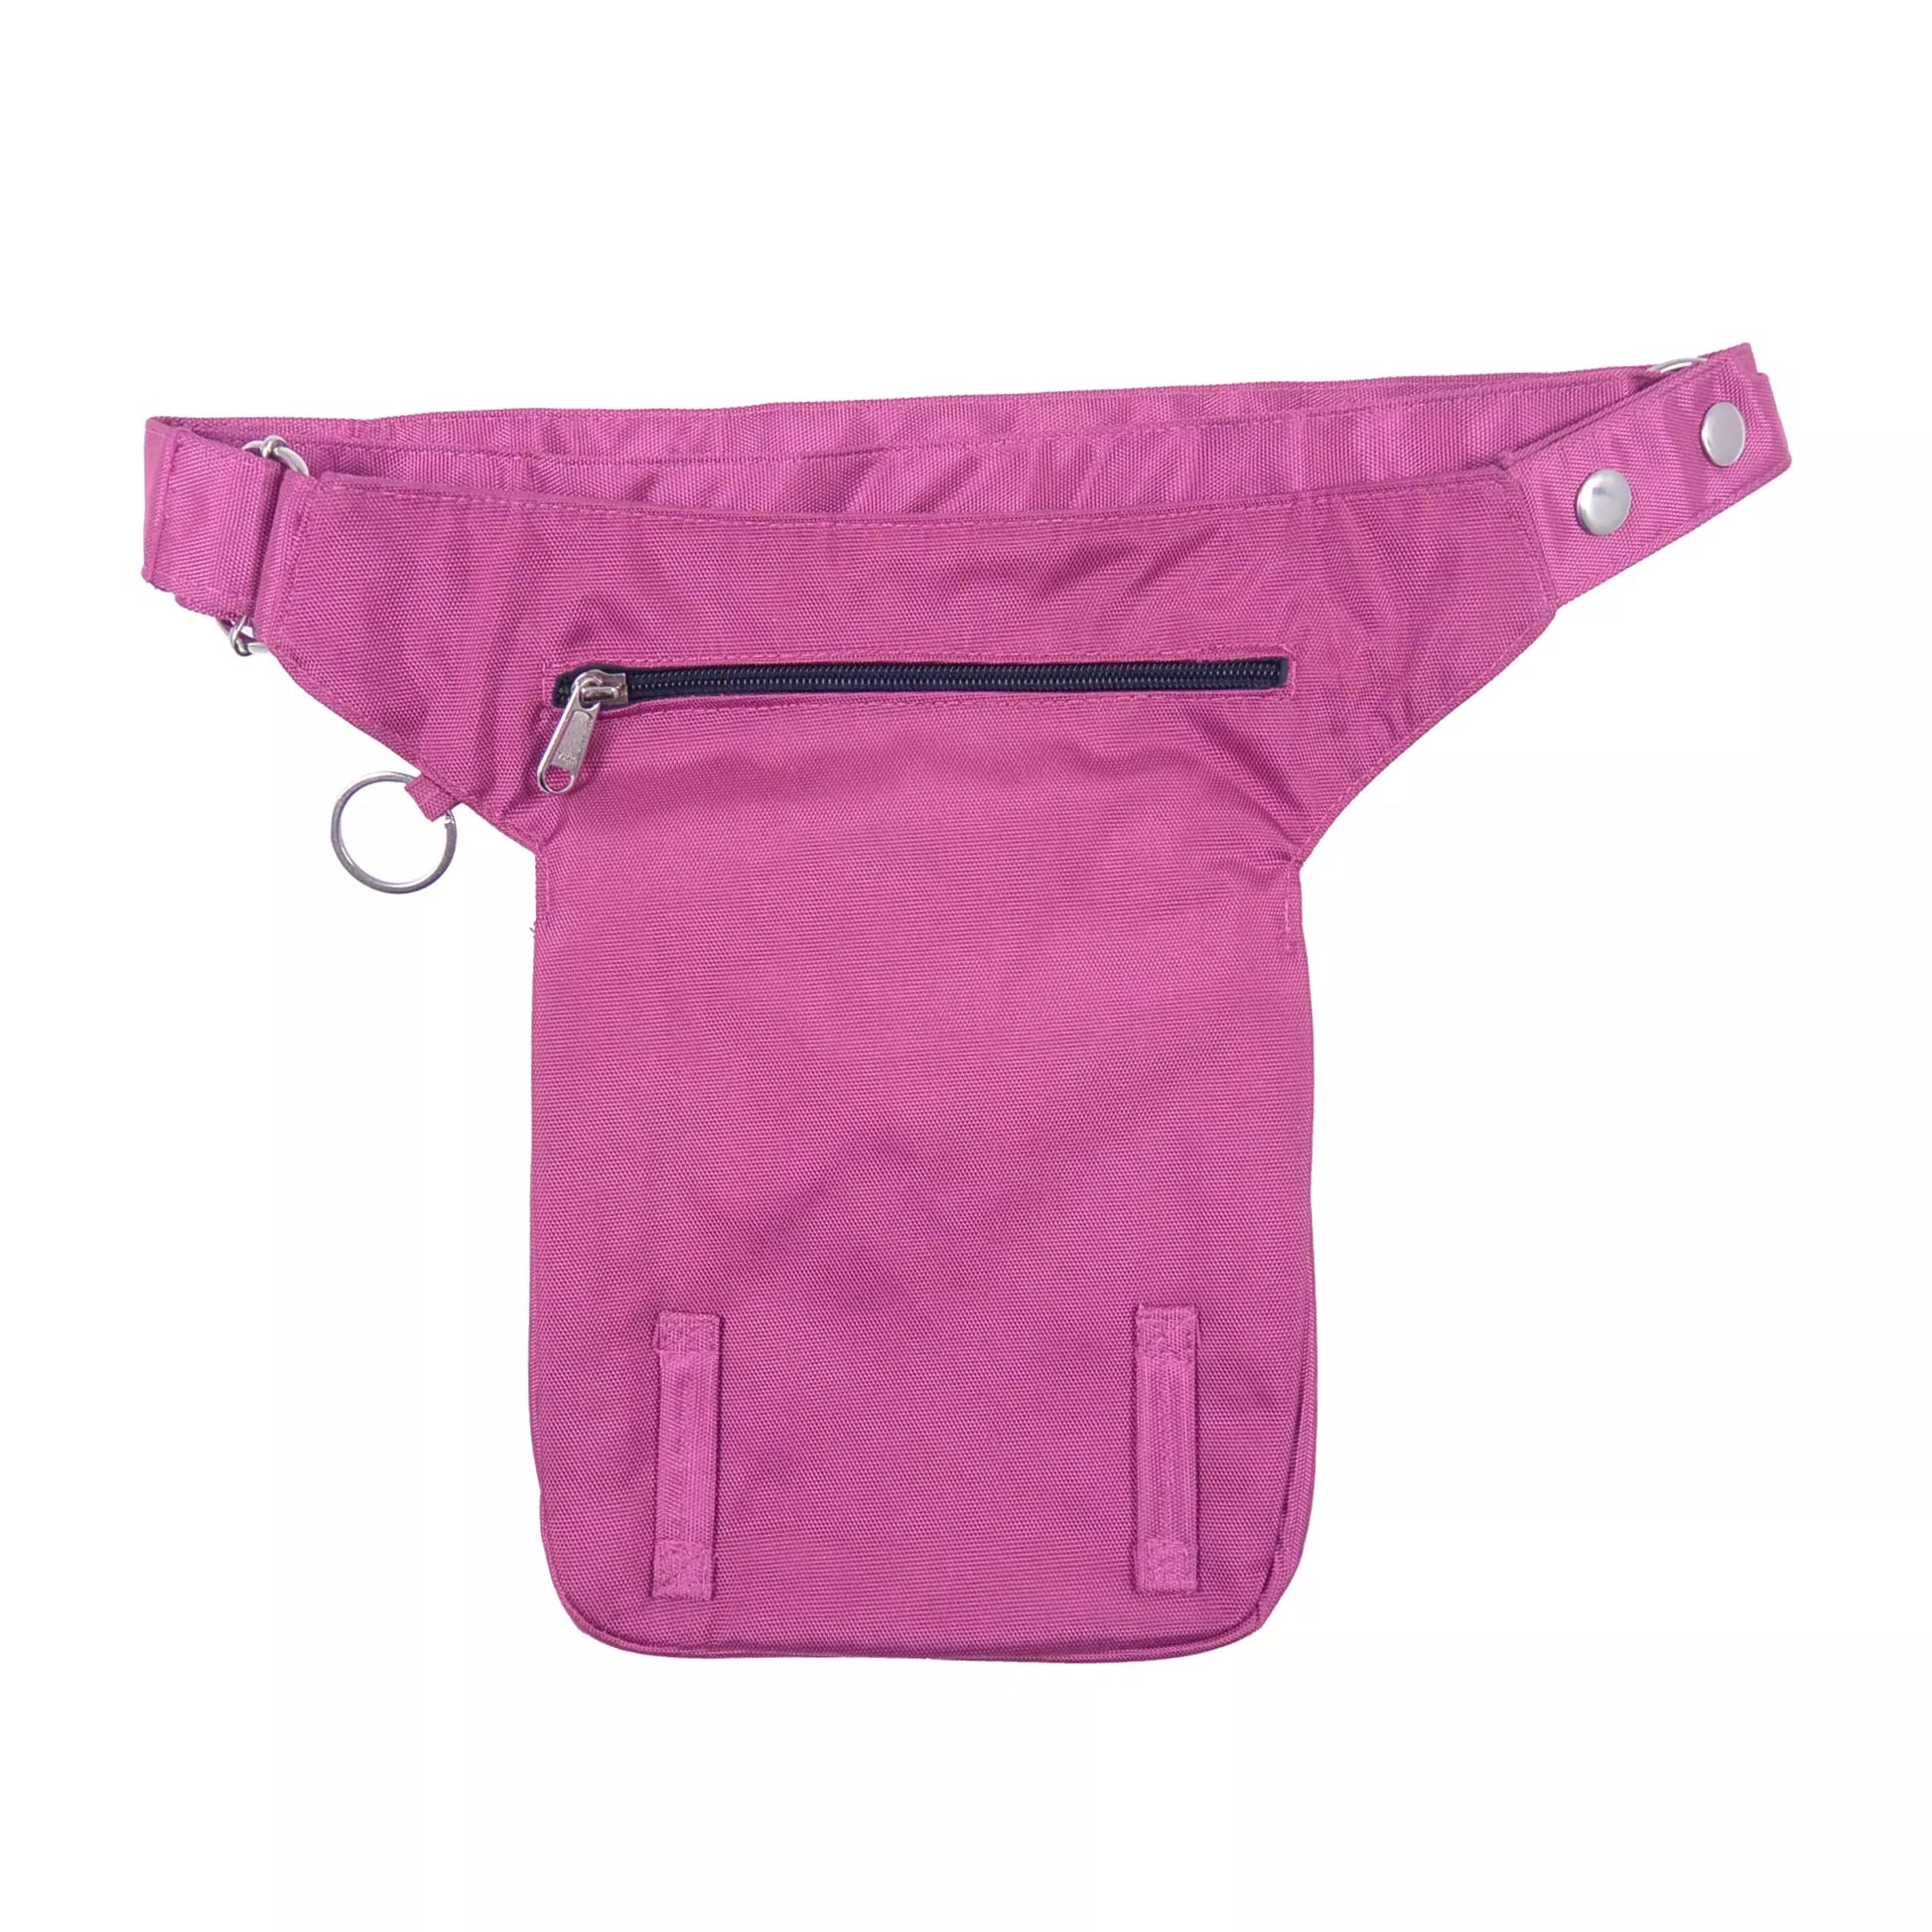 Gürteltasche aus wasserabweisenden Stoff Pink, mit einem Reißverschlussfach hinten und zwei Gürtelschlaufen zur Befestigung eines Oberschenkelgurts.